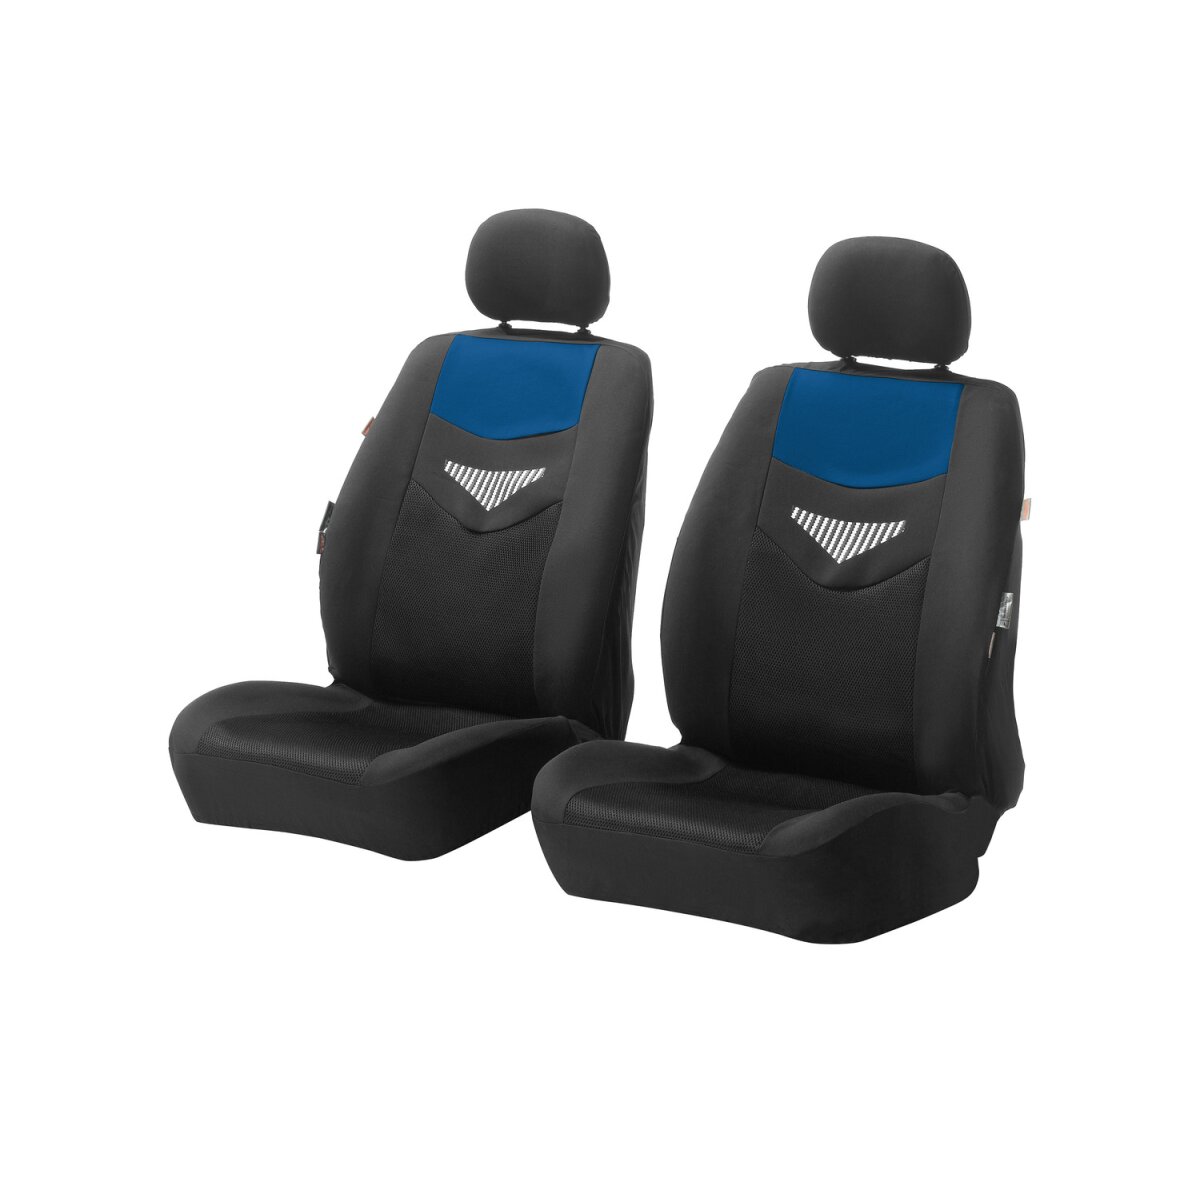 Ultimate Speed Autositzbezug-Set, 14-teilig, blau - B-Ware sehr gut, 20,99 €